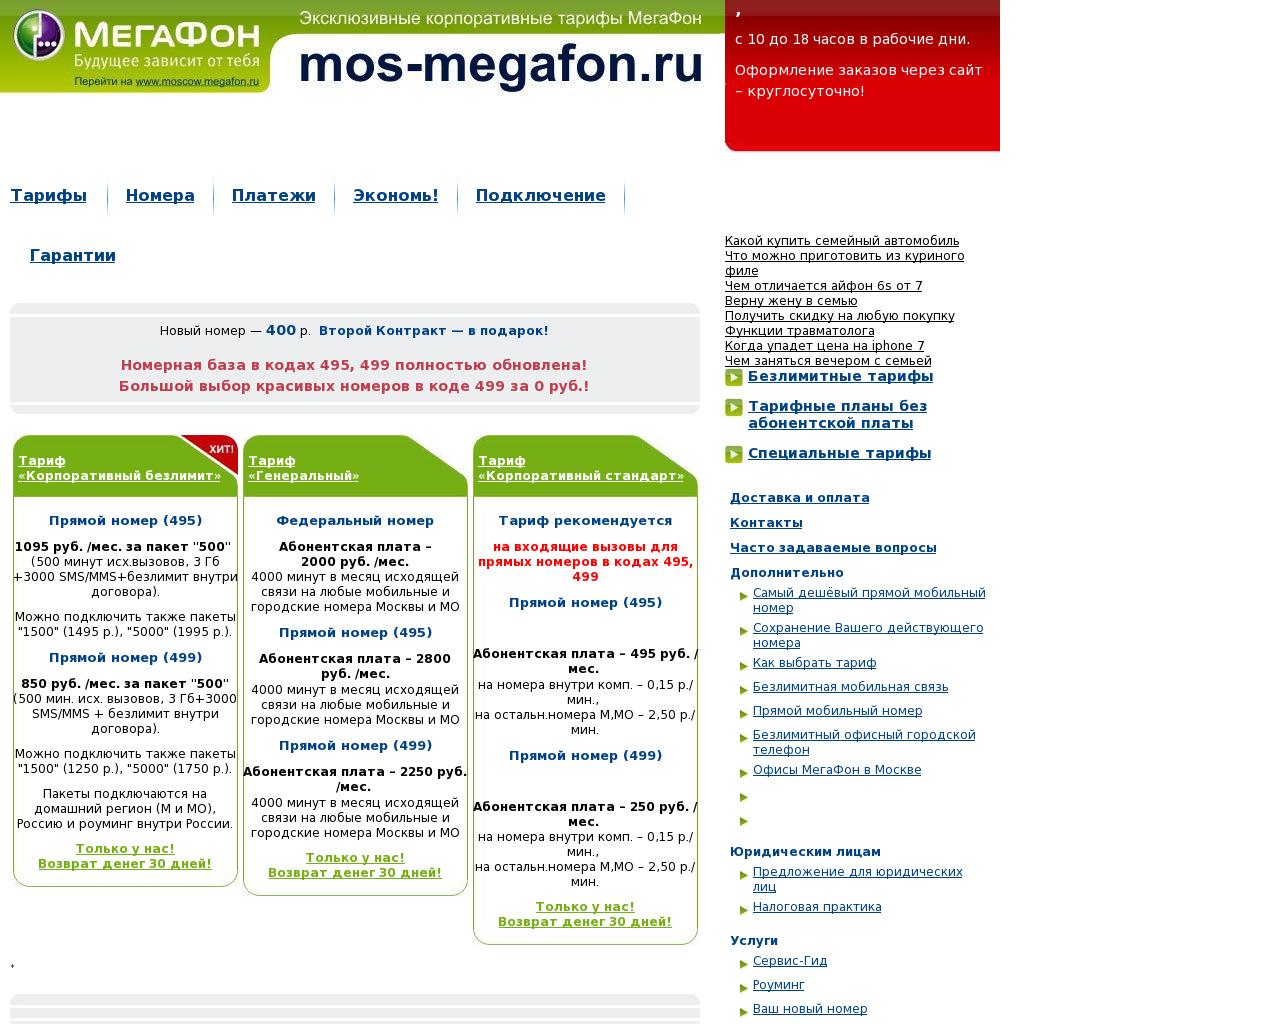 Изображение сайта mos-megafon.ru в разрешении 1280x1024